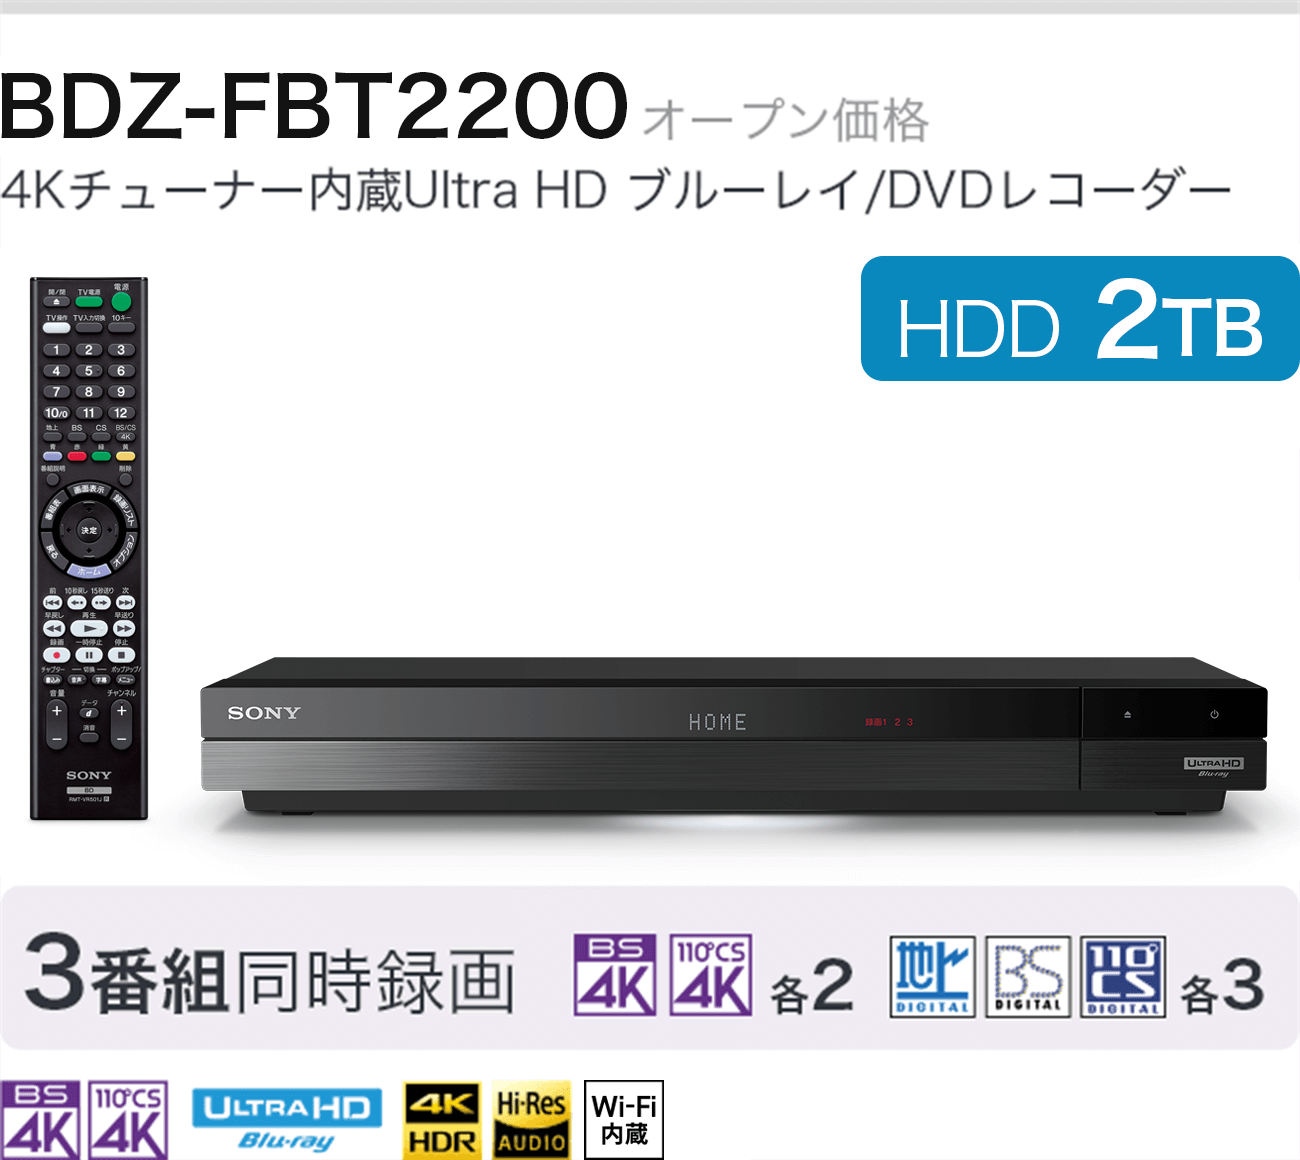 BDZ-FBT2200 I[vi 4K`[i[Ultra HD u[C/DVDR[_[ HDD 2TB 3ԑg^